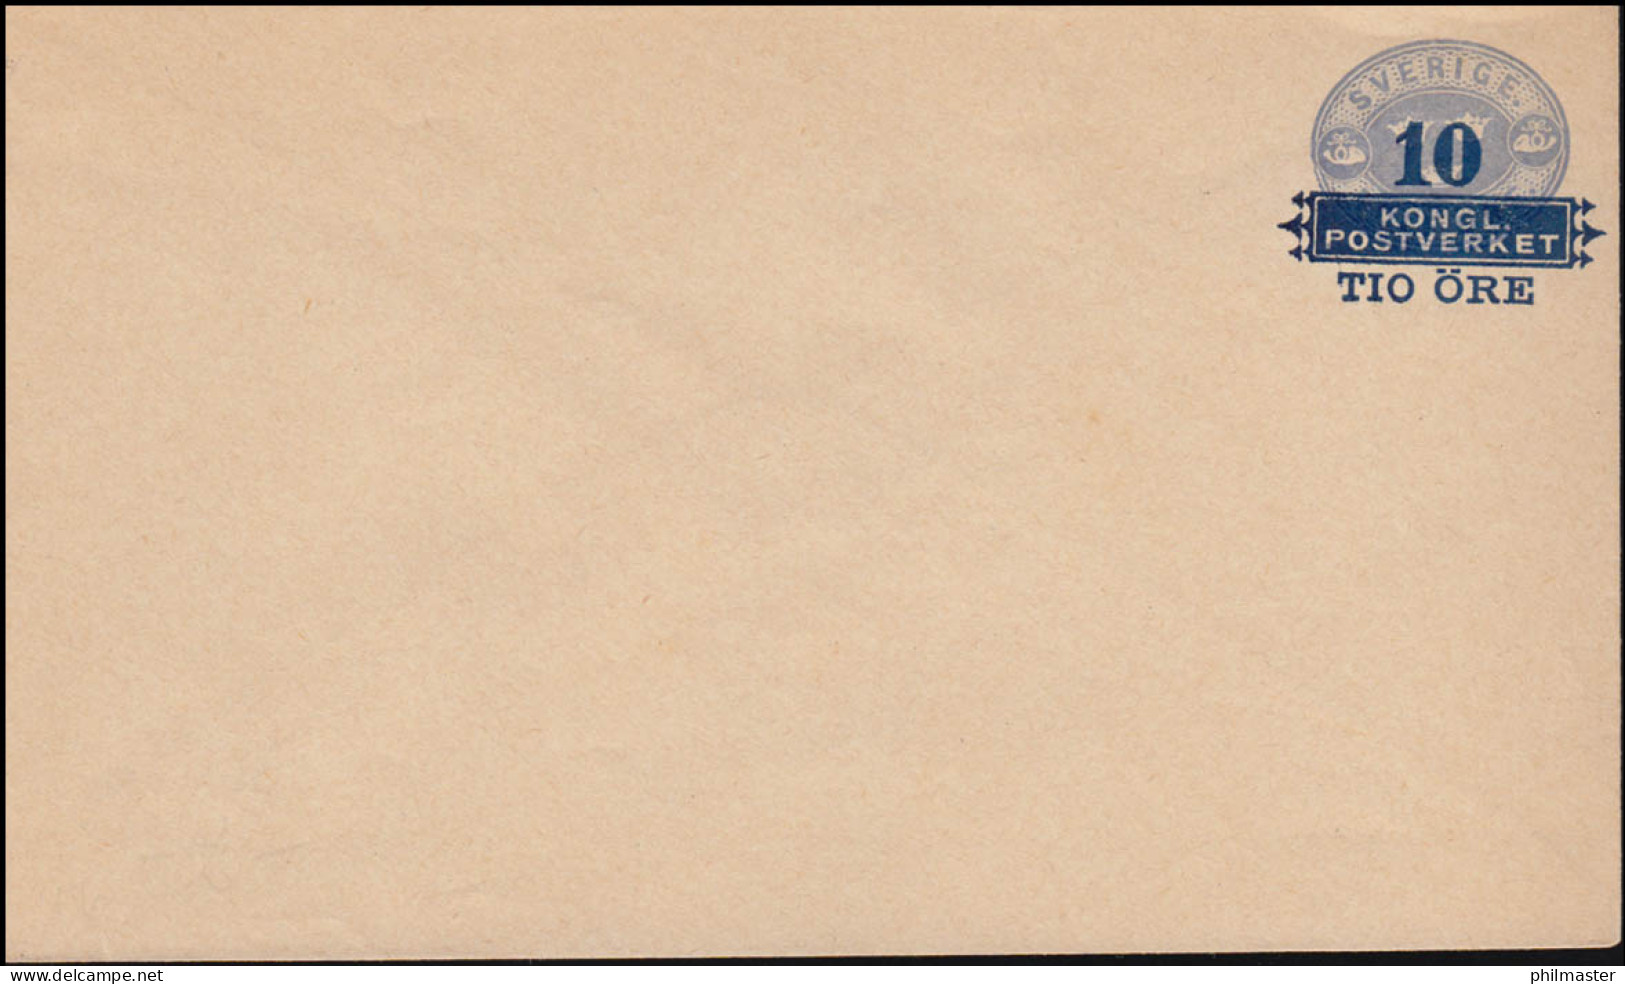 Schweden Umschlag U 6 Drei Kronen Mit Aufdruck 10 Auf 12 Öre 1889, ** Postfrisch - Enteros Postales